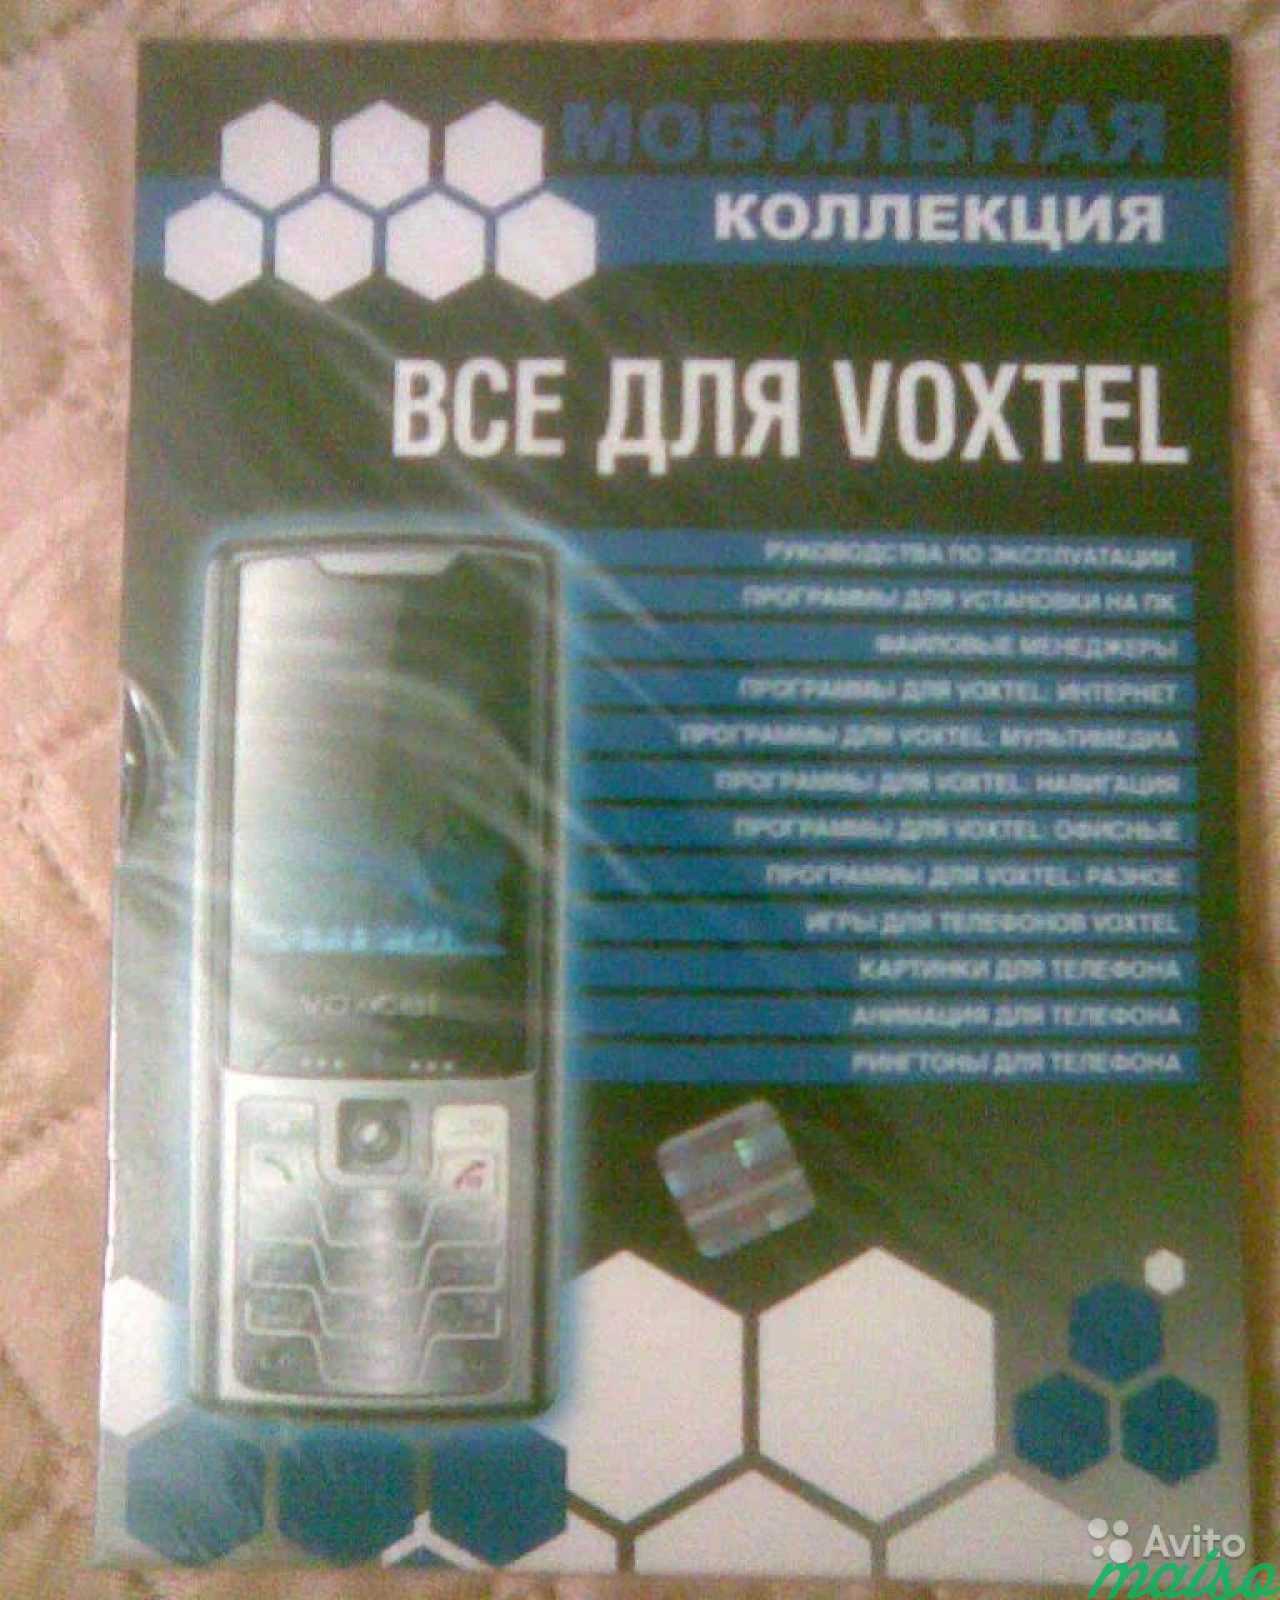 Прогрыммы для мобильных телефонов в Санкт-Петербурге. Фото 1